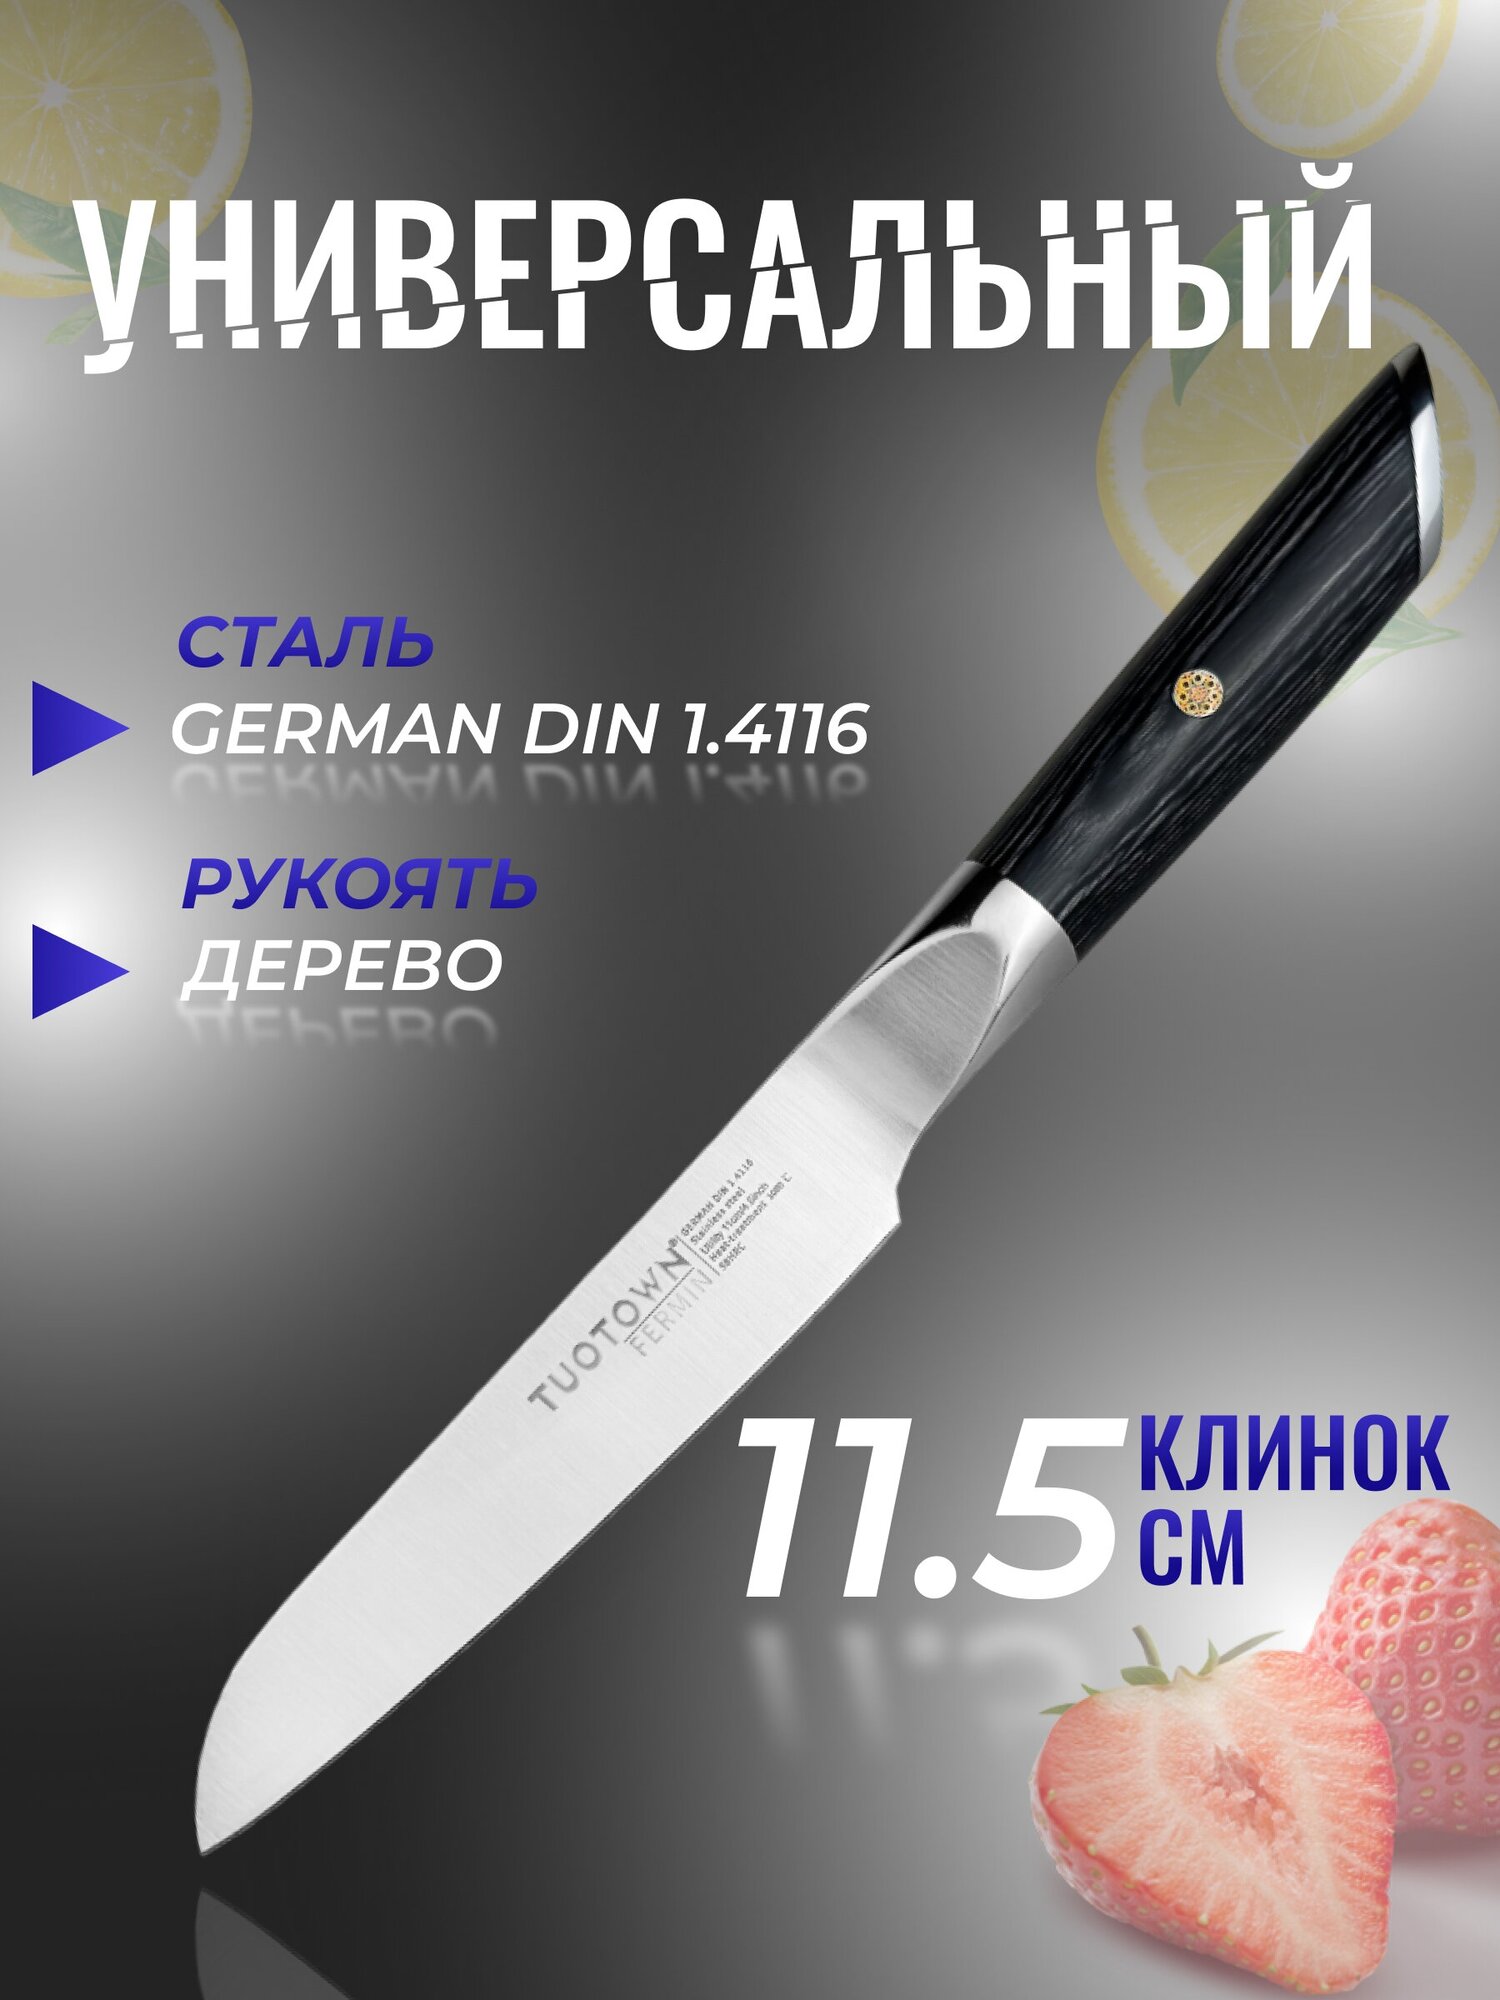 Кухонный нож Универсальный, серии FERMIN, TUOTOWN, рукоять дерево